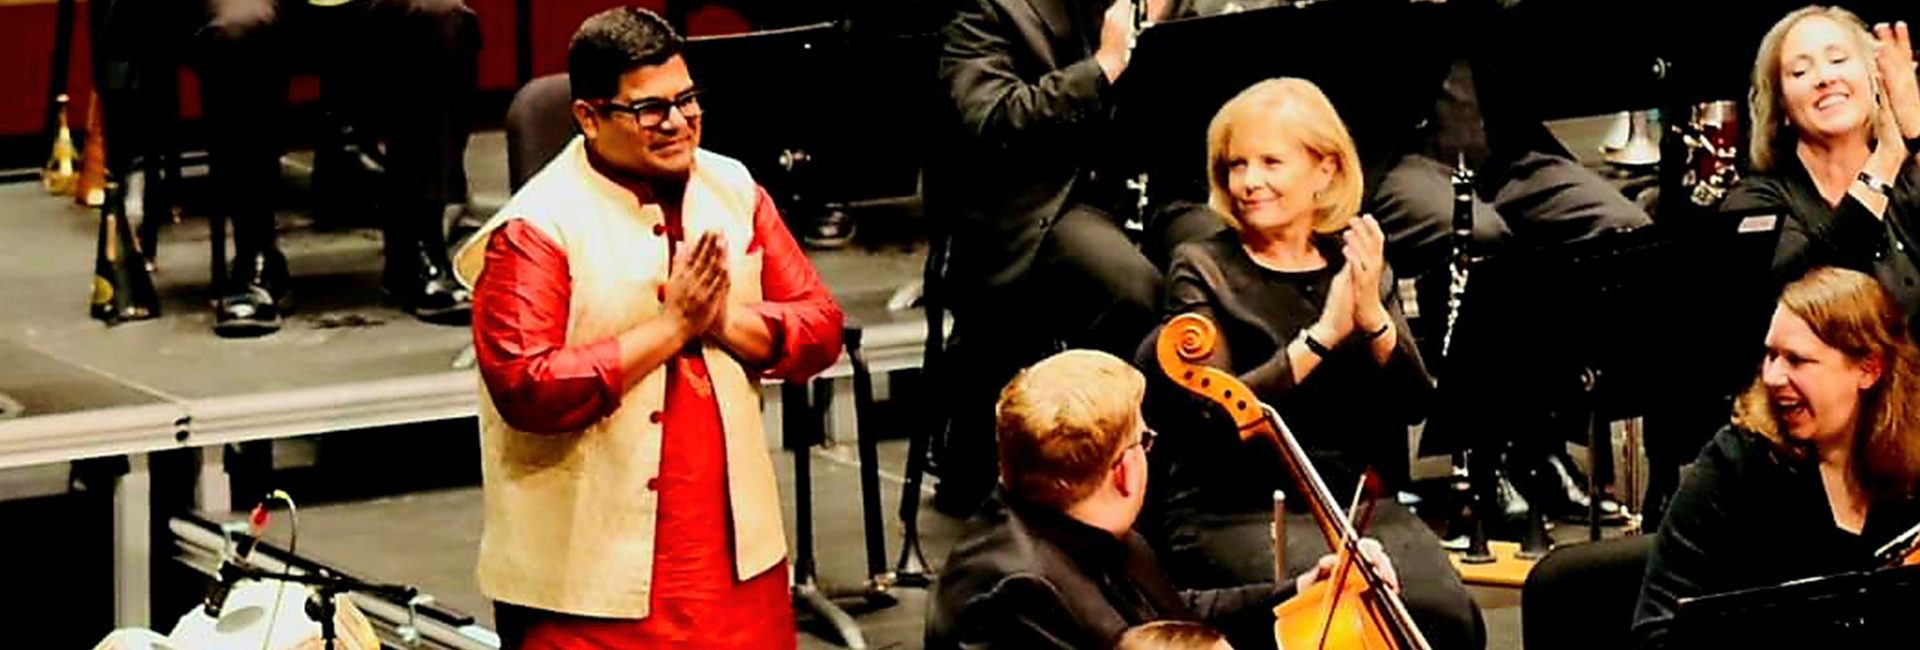 सुतनु सुर : संगीत के जरिए भारत की सॉफ्ट पावर को दुनिया के सामने ले जाना